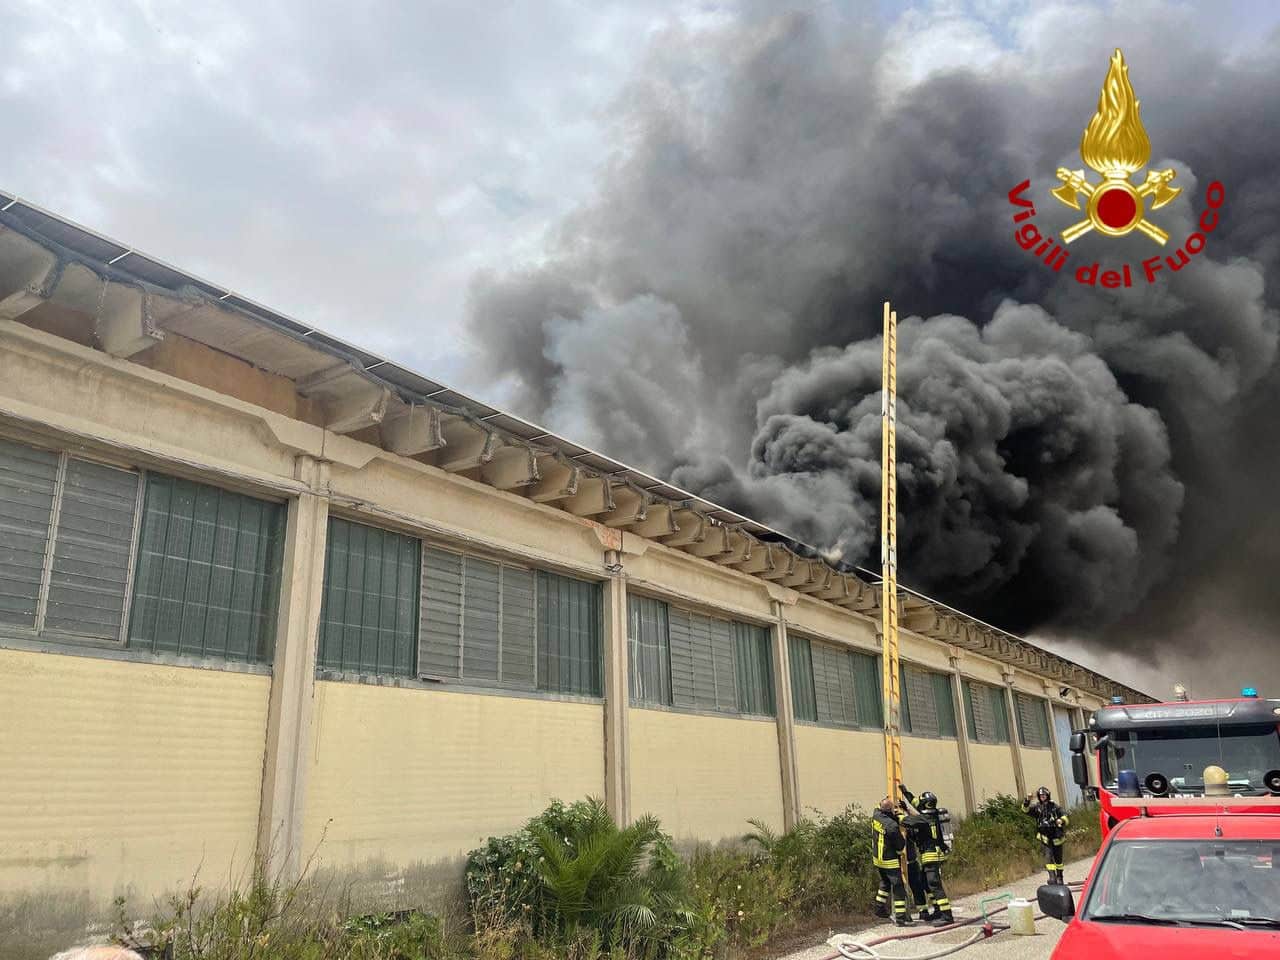 Incendio nella zona industriale, prende fuoco il tetto di un capannone – LE FOTO